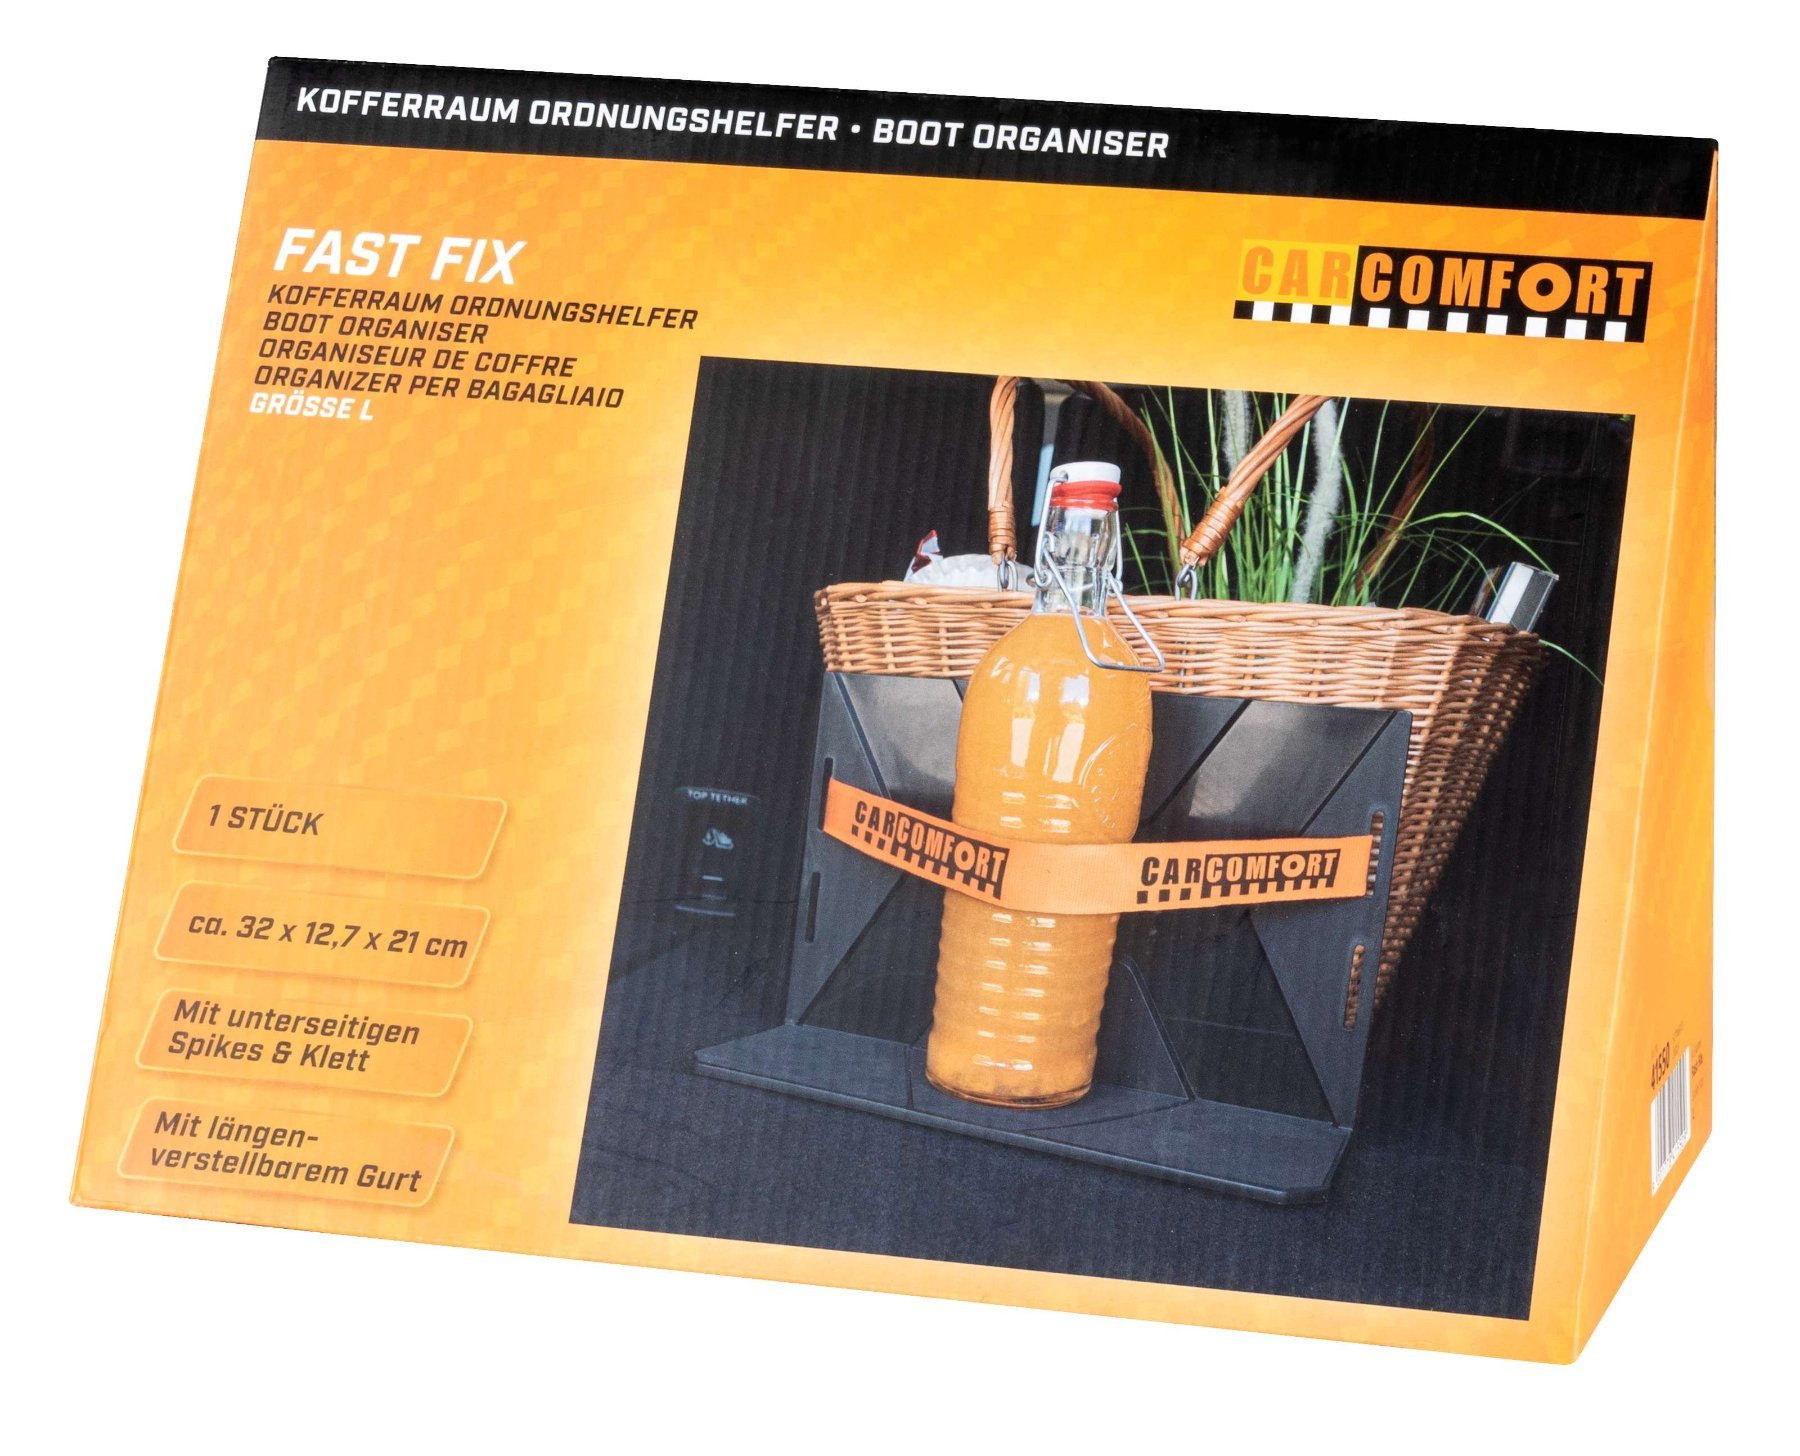 Kofferraum Ordnungshelfer FastFix L, Ladungshilfe mit Gurt schwarz/orange